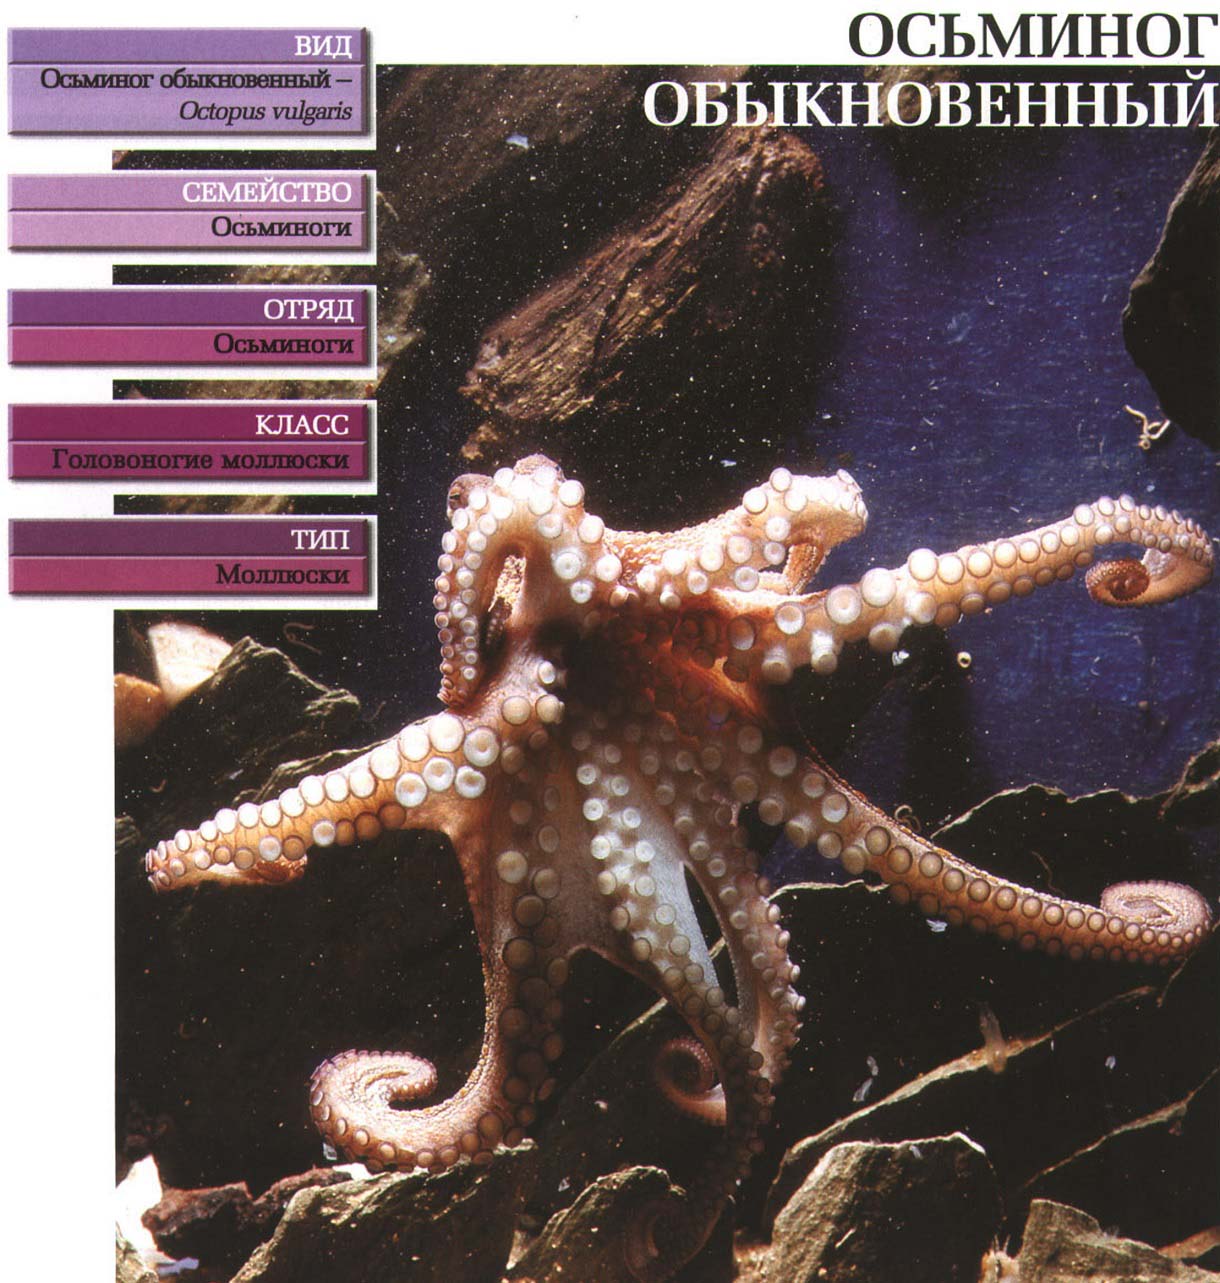 Систематика (научная классификация) обыкновенного осьминога. Octopus vulgaris.